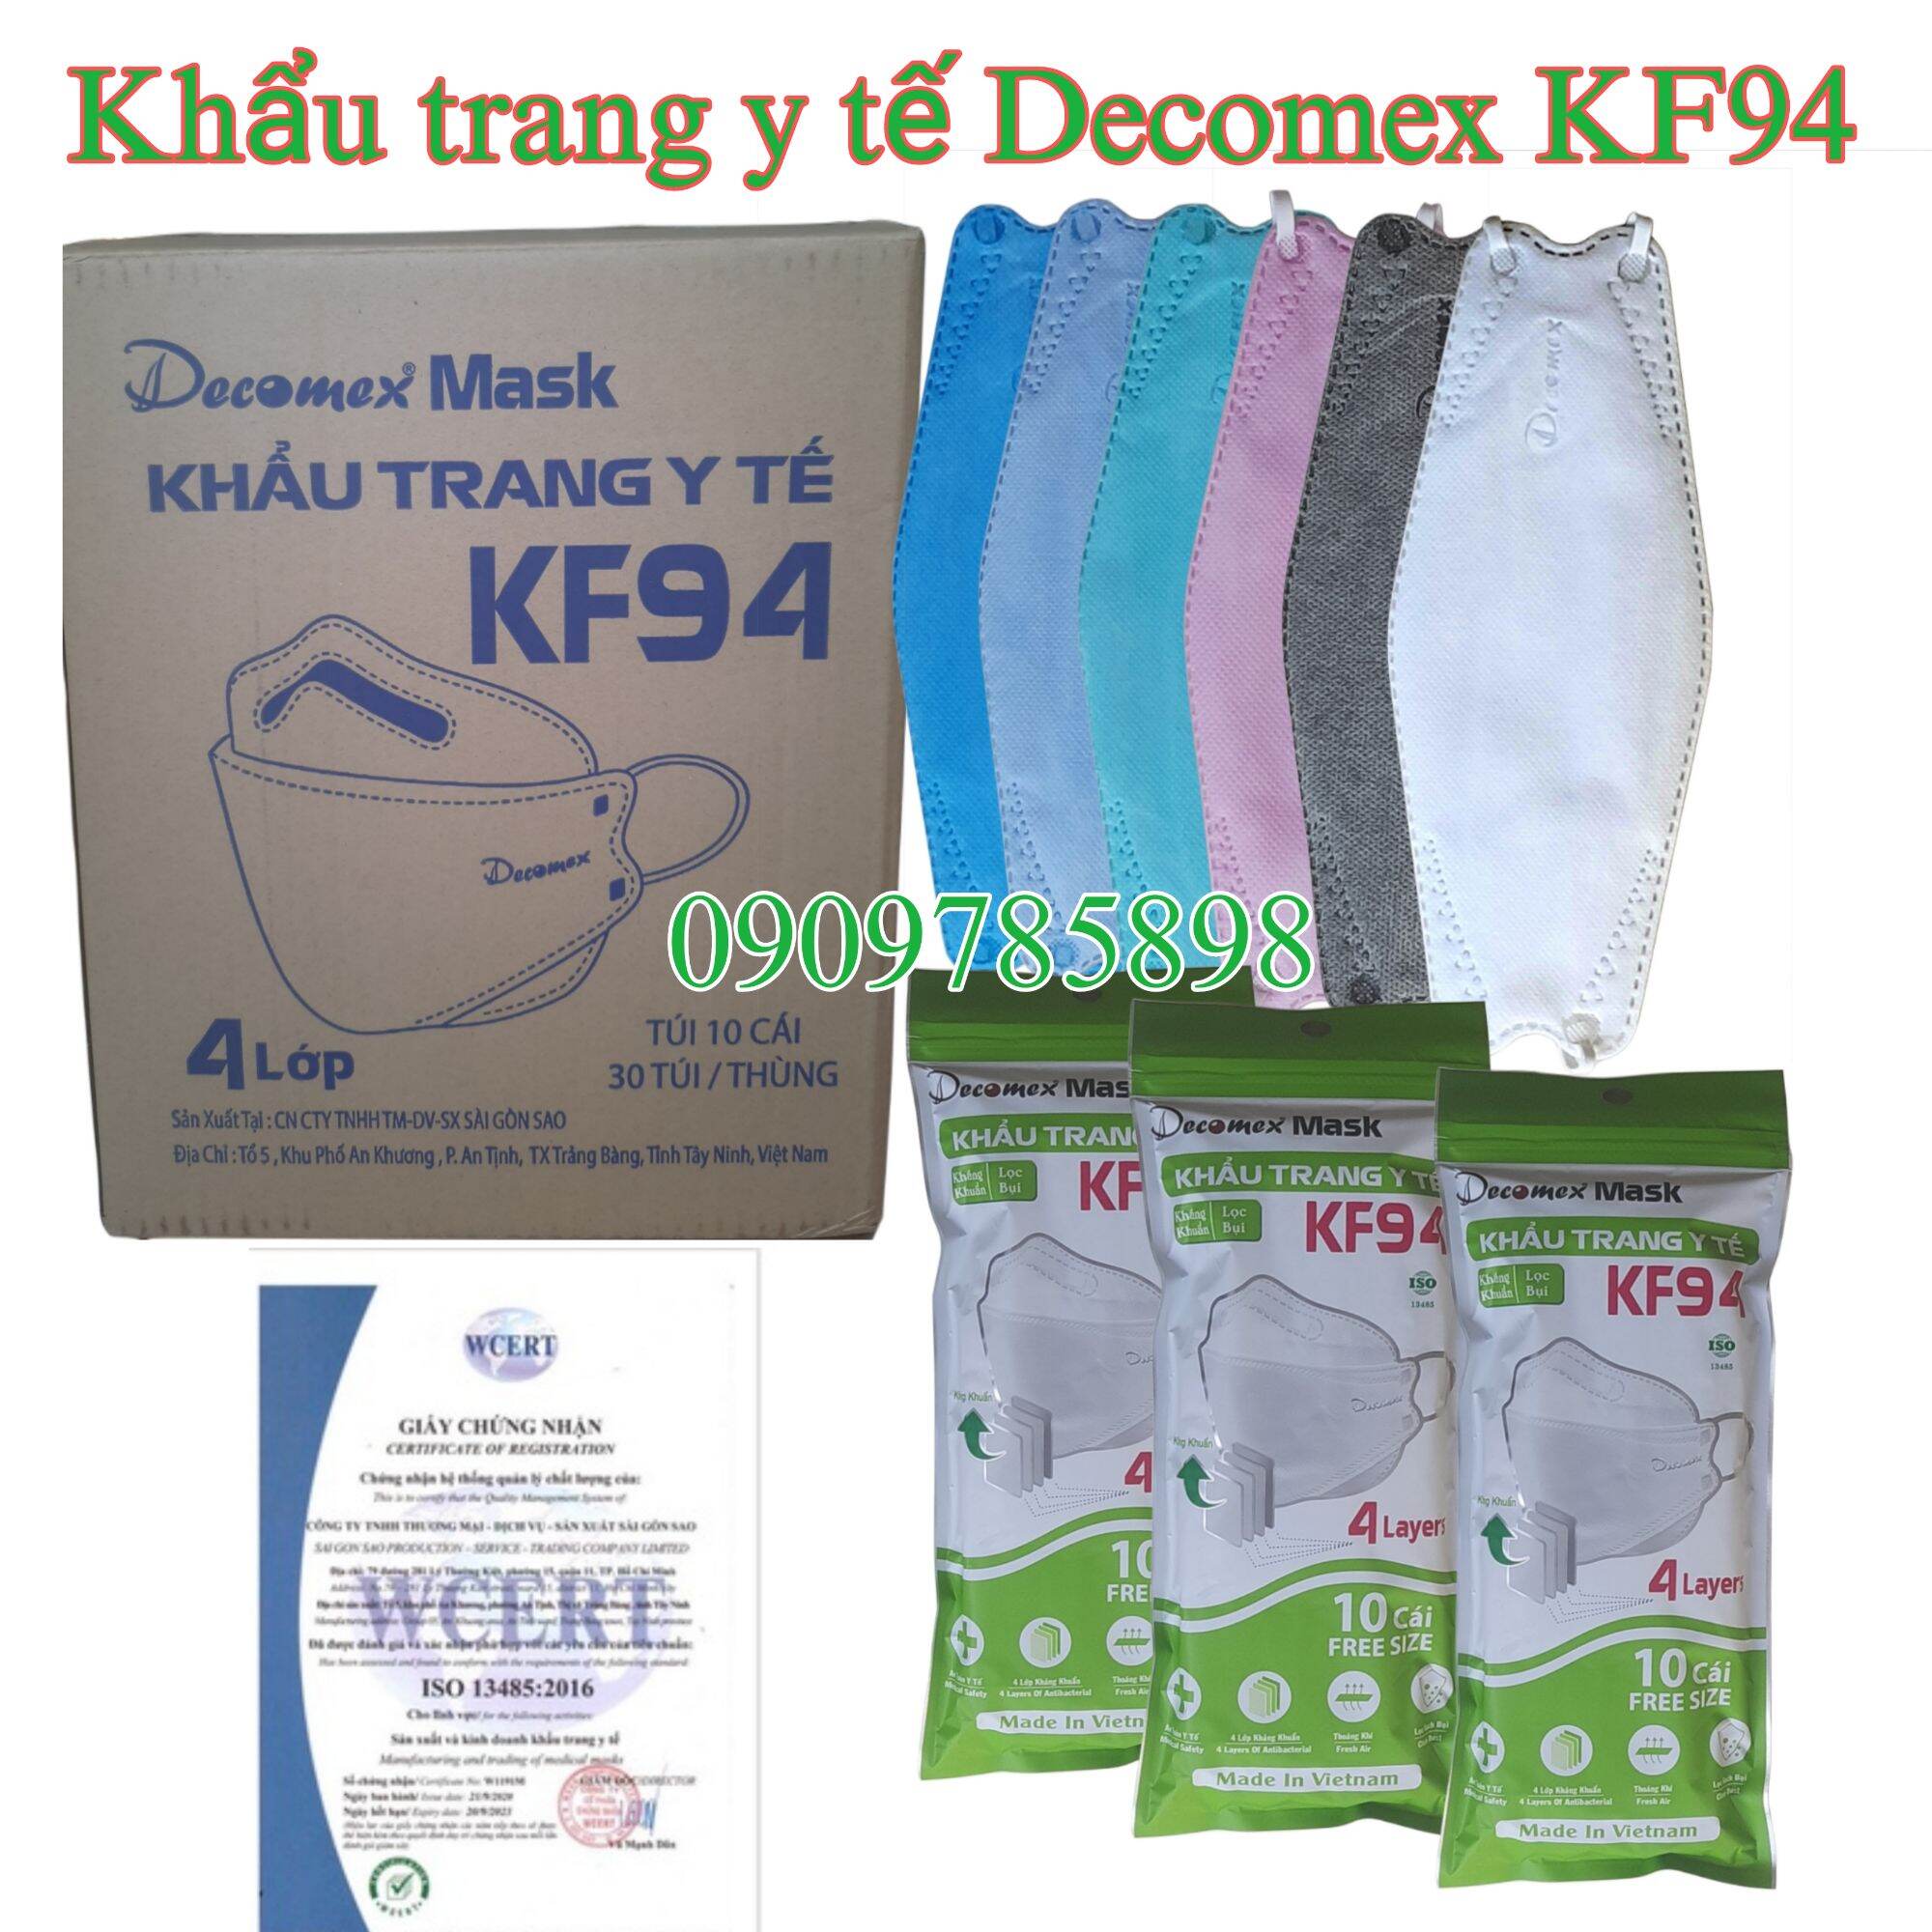 [Bịch 10 cái KF94 Decomex] Khẩu trang y tế KF94 Decomex,  4 lớp CN Hàn Quốc, kháng khuẩn, lọc bụi mịn, đối lưu khí (có chứng từ Y Tế)